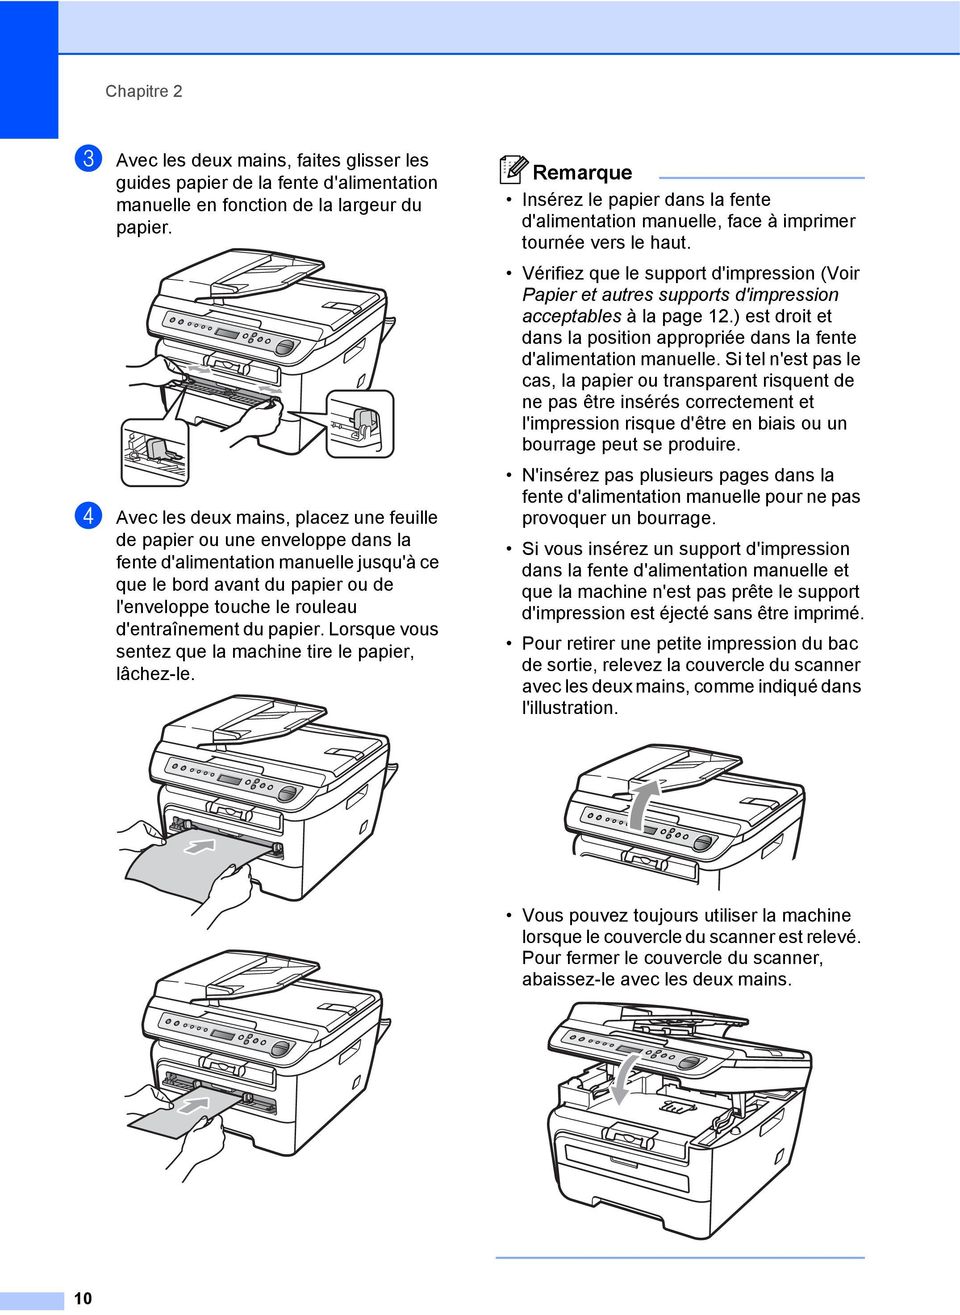 papier. Lorsque vous sentez que la machine tire le papier, lâchez-le. Remarque Insérez le papier dans la fente d'alimentation manuelle, face à imprimer tournée vers le haut.